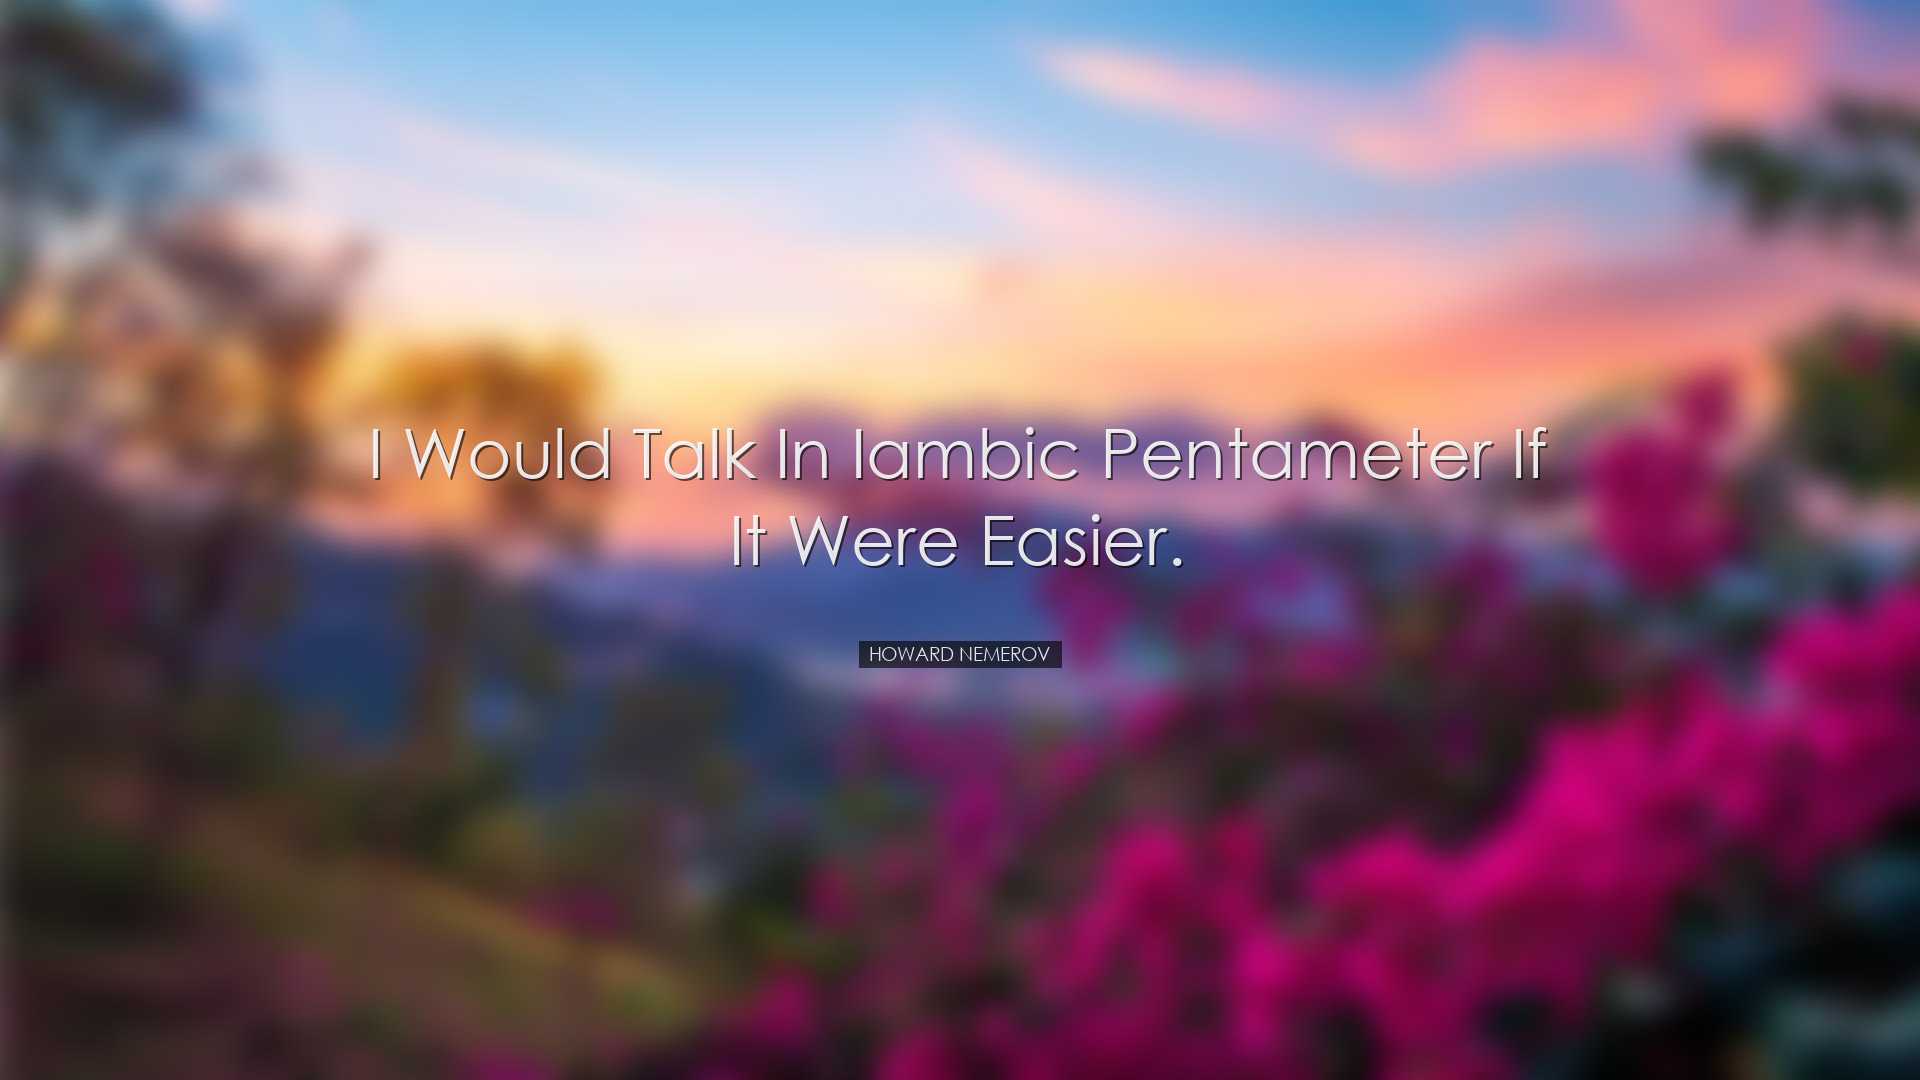 I would talk in iambic pentameter if it were easier. - Howard Neme